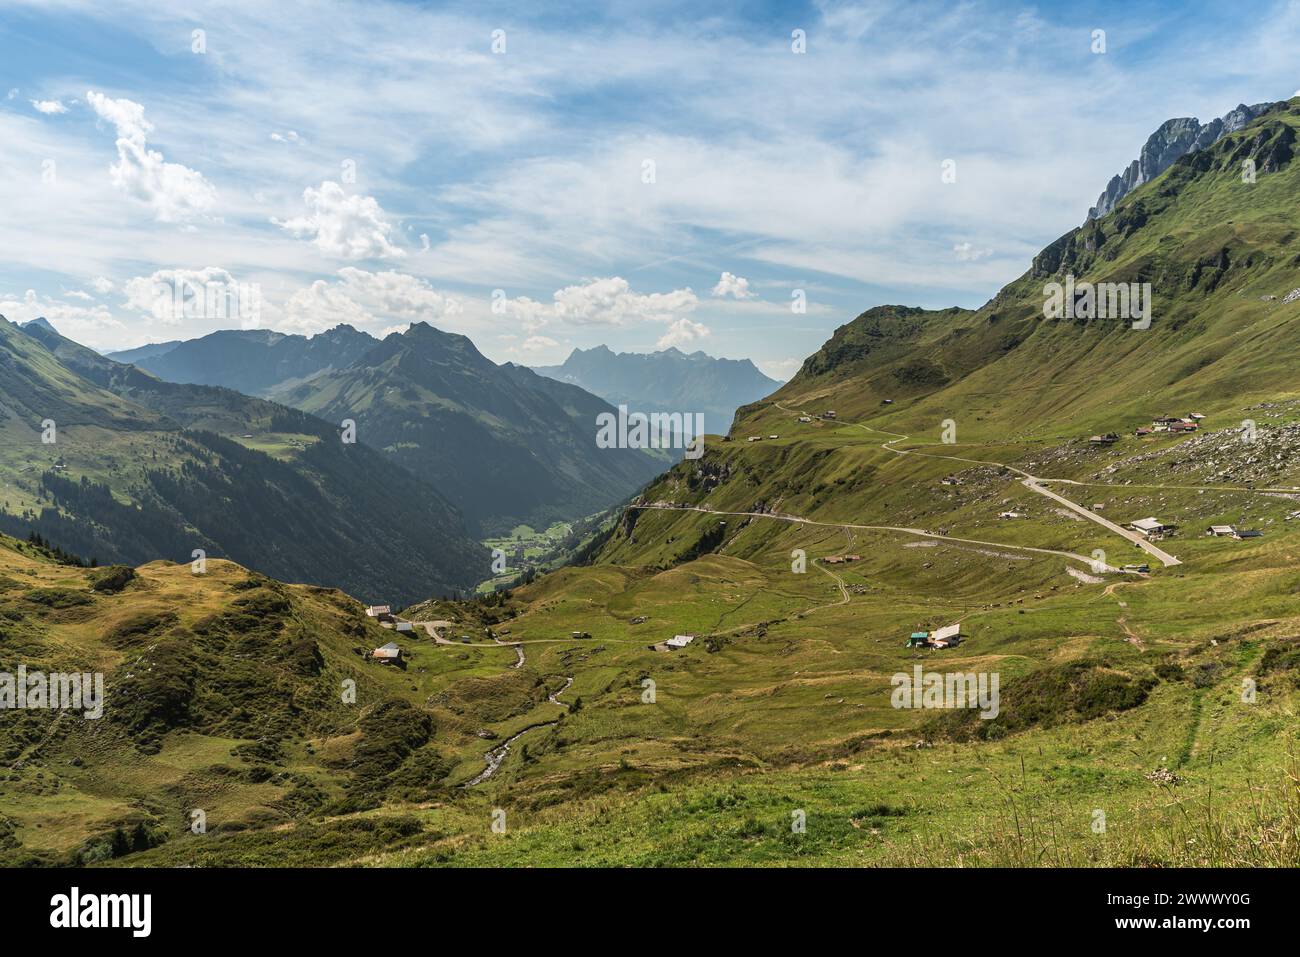 Paysage de montagne et route de passage au col de Klausen, Unterschaechen, Canton d'Uri, Suisse Banque D'Images